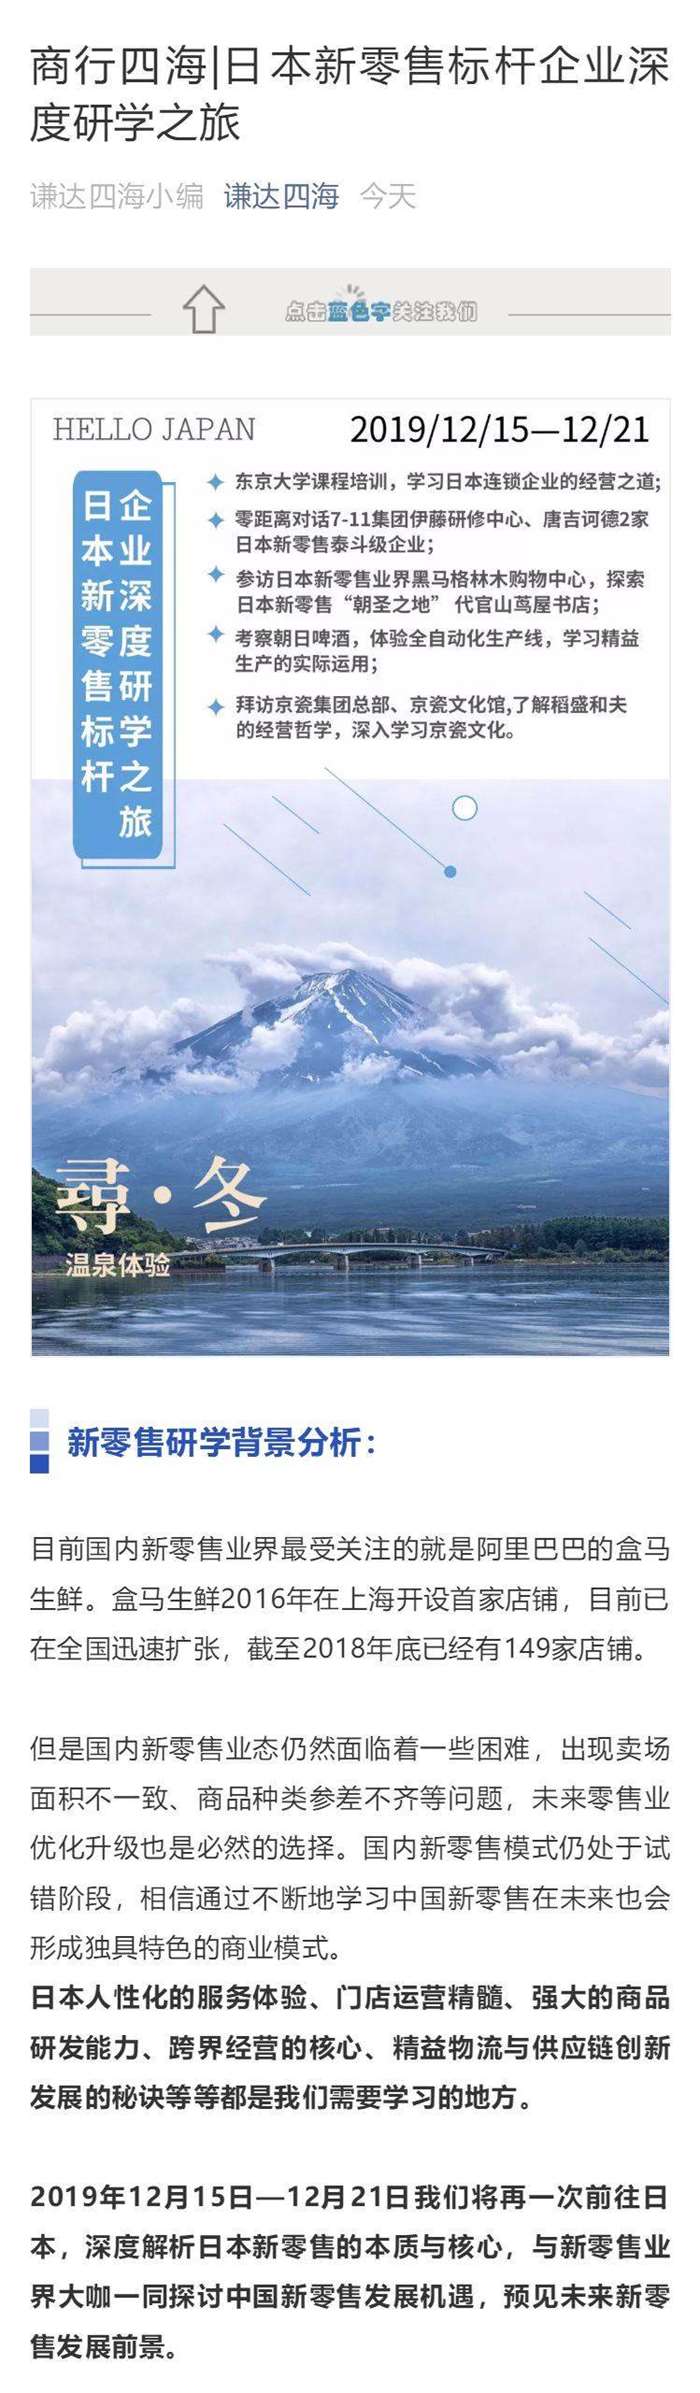 谦达四海新零售12月份宣传行程图片版本活动行上1.png